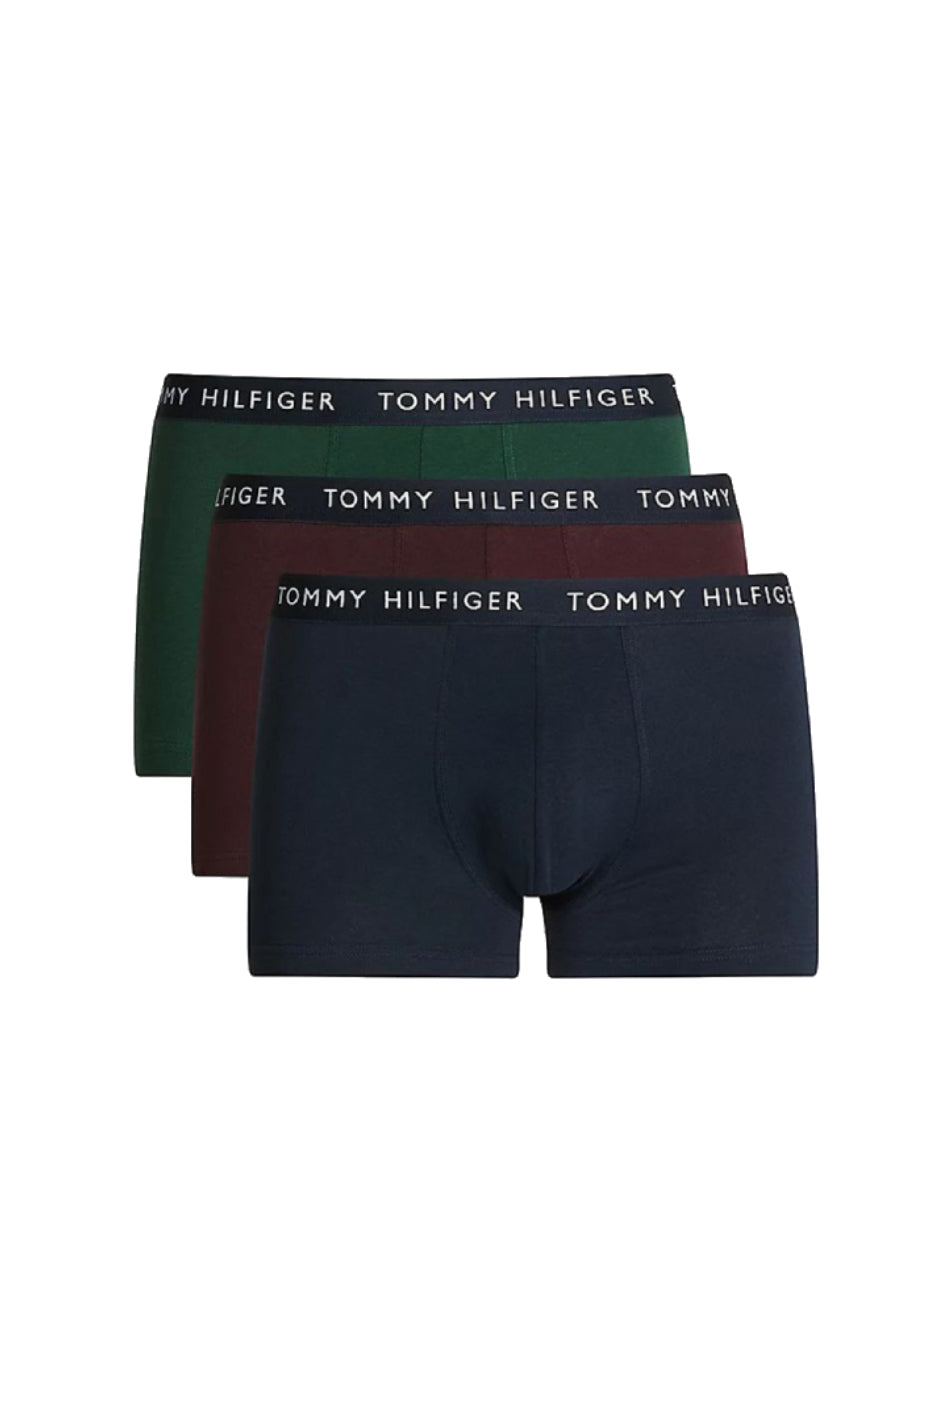 Tommy Hilfiger 3 Pack Men's Trunk